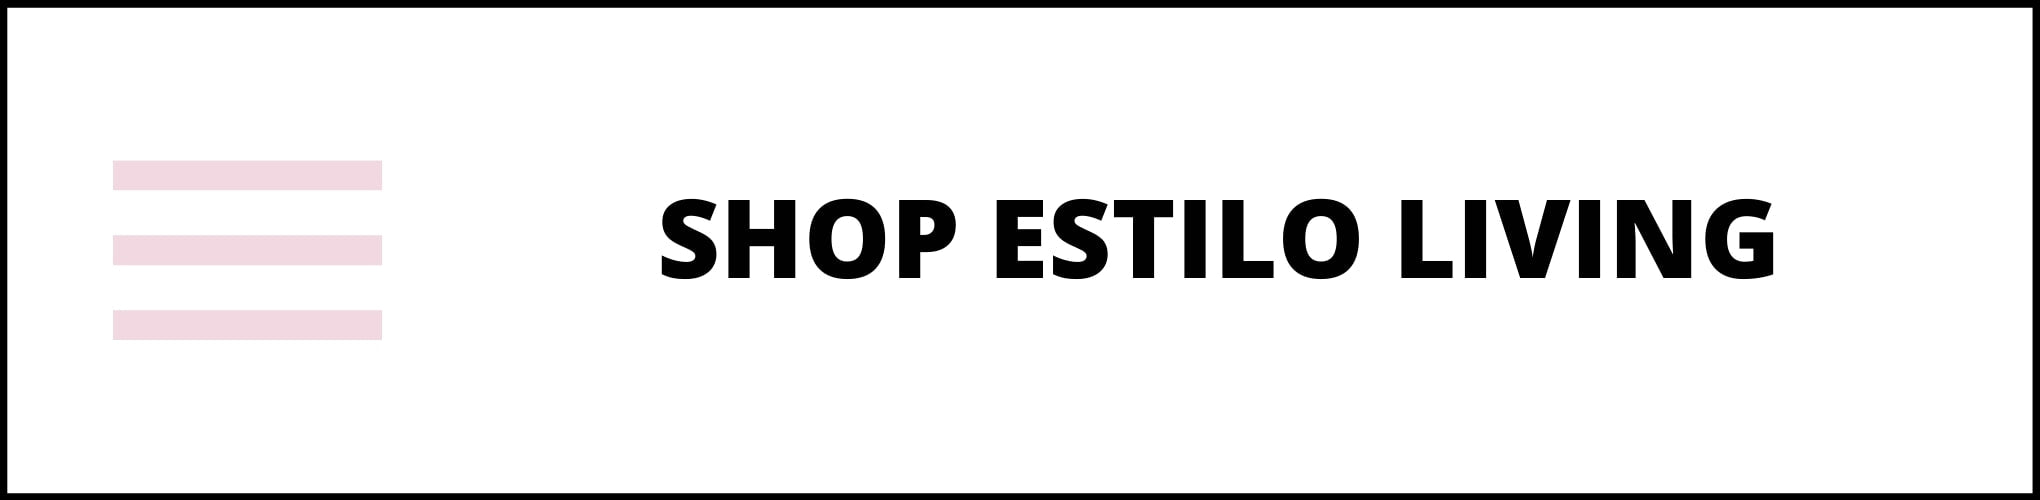 Shop Estilo Living Online Now